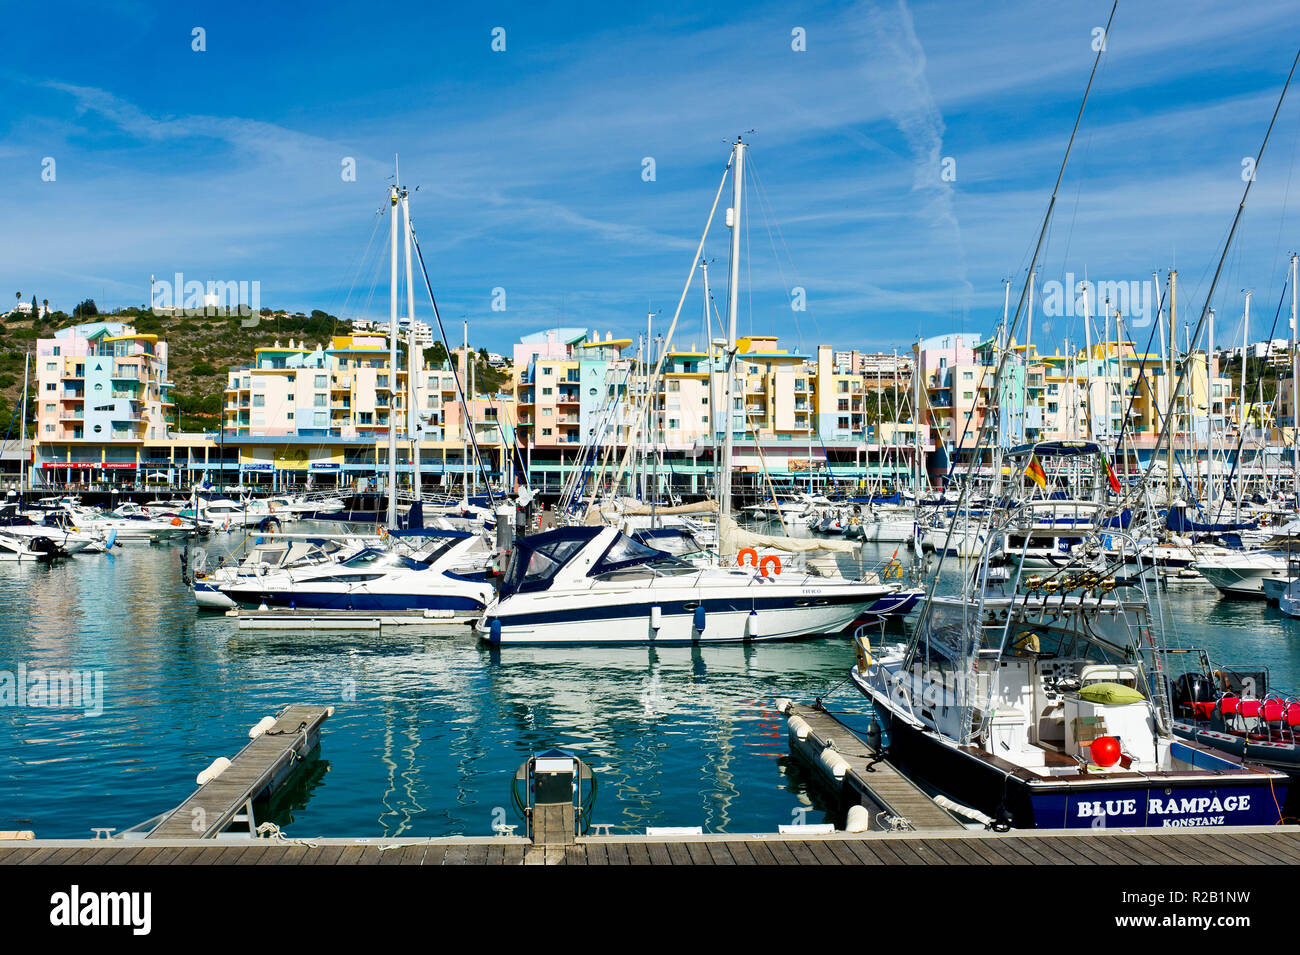 Boote, Yachten, bunten Gebäude, der Jachthafen von Albufeira, Algarve, Portugal Stockfoto